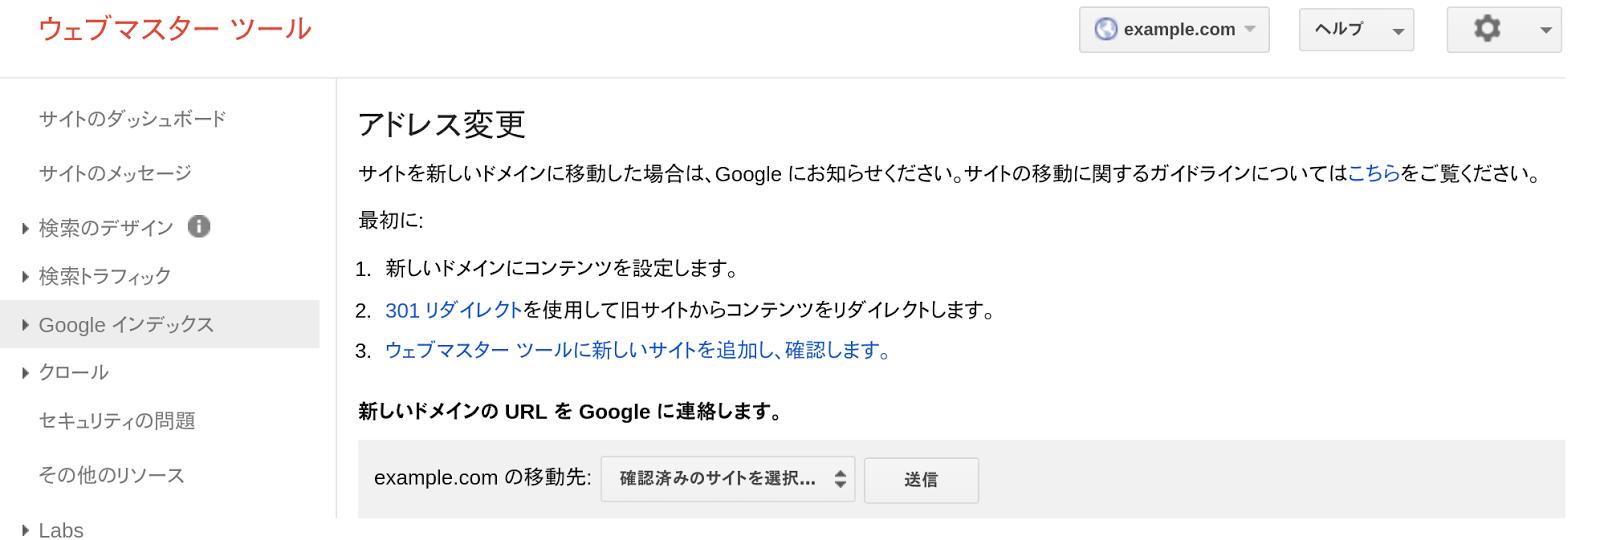 Google ウェブマスター向け公式ブログ Ja 2014